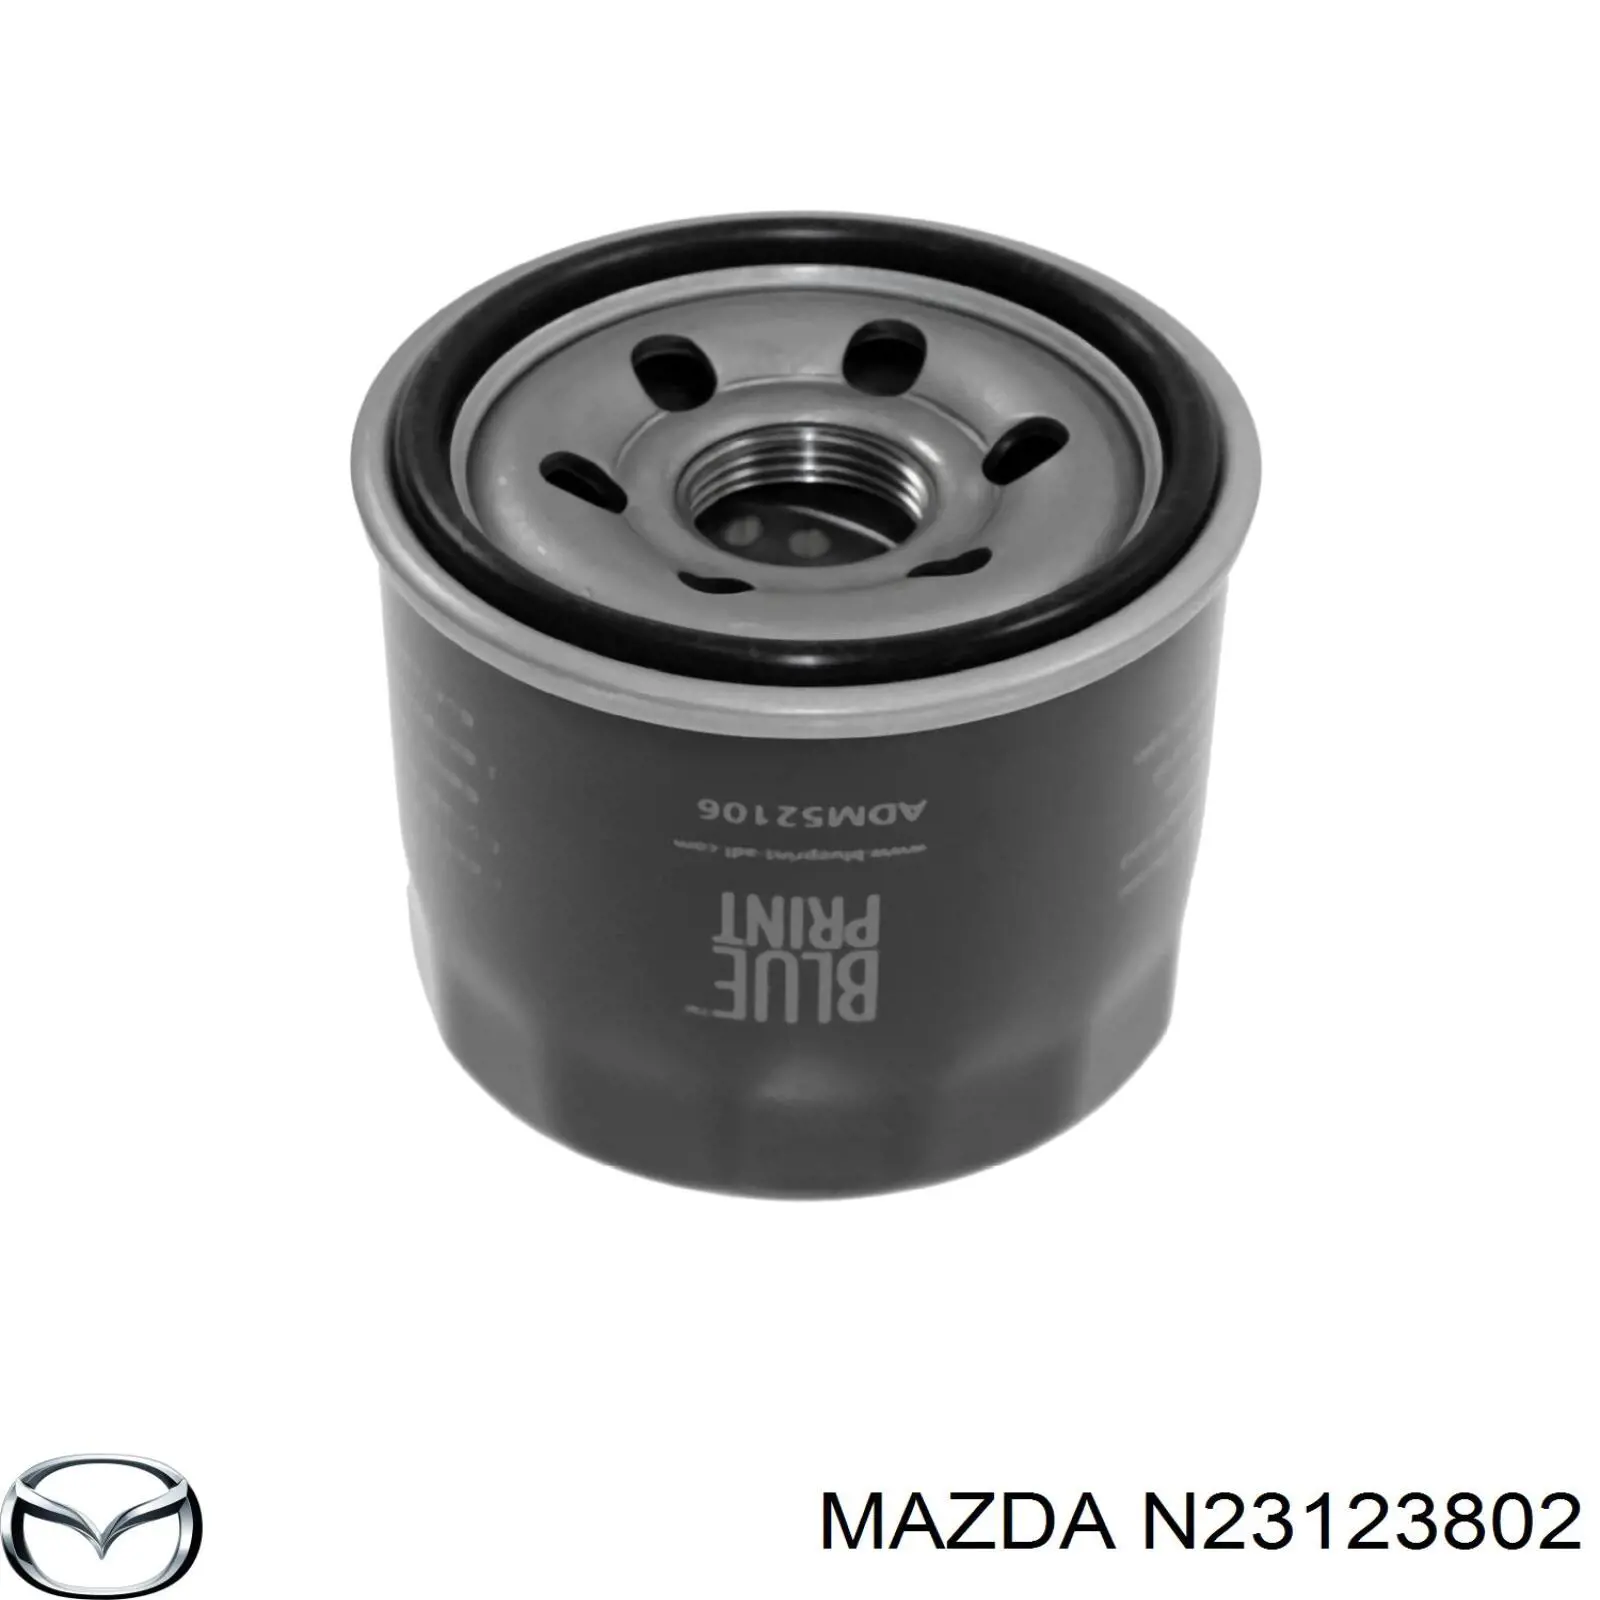 N23123802 Mazda filtro de aceite